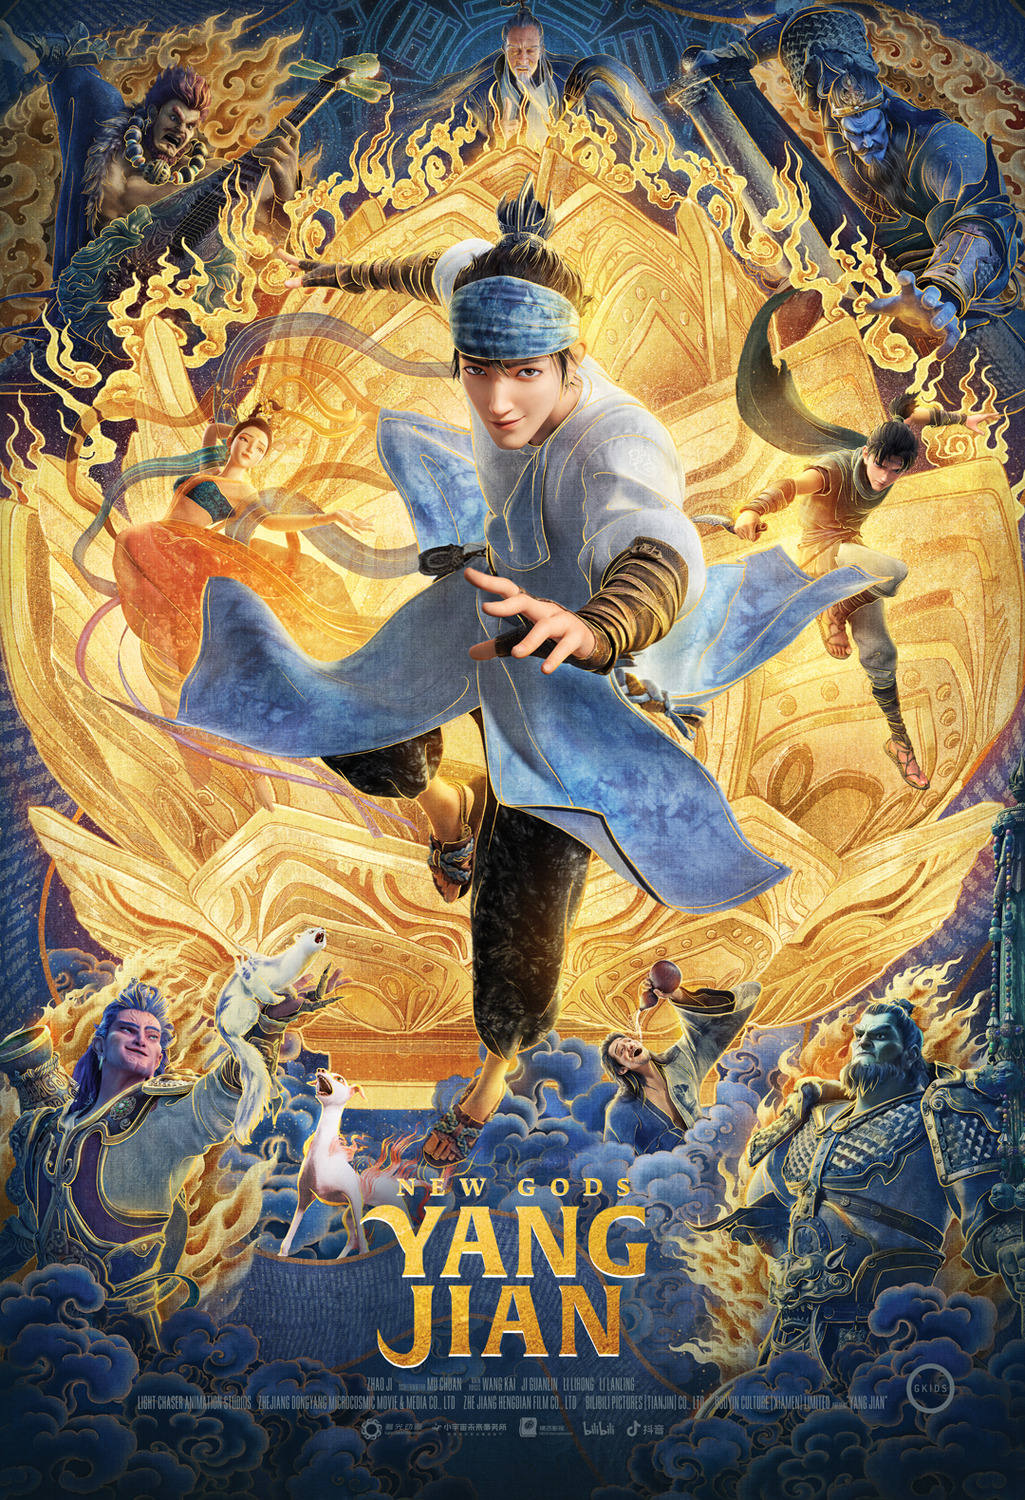 Extra Large Movie Poster Image for Xin shen bang: Yang Jian 